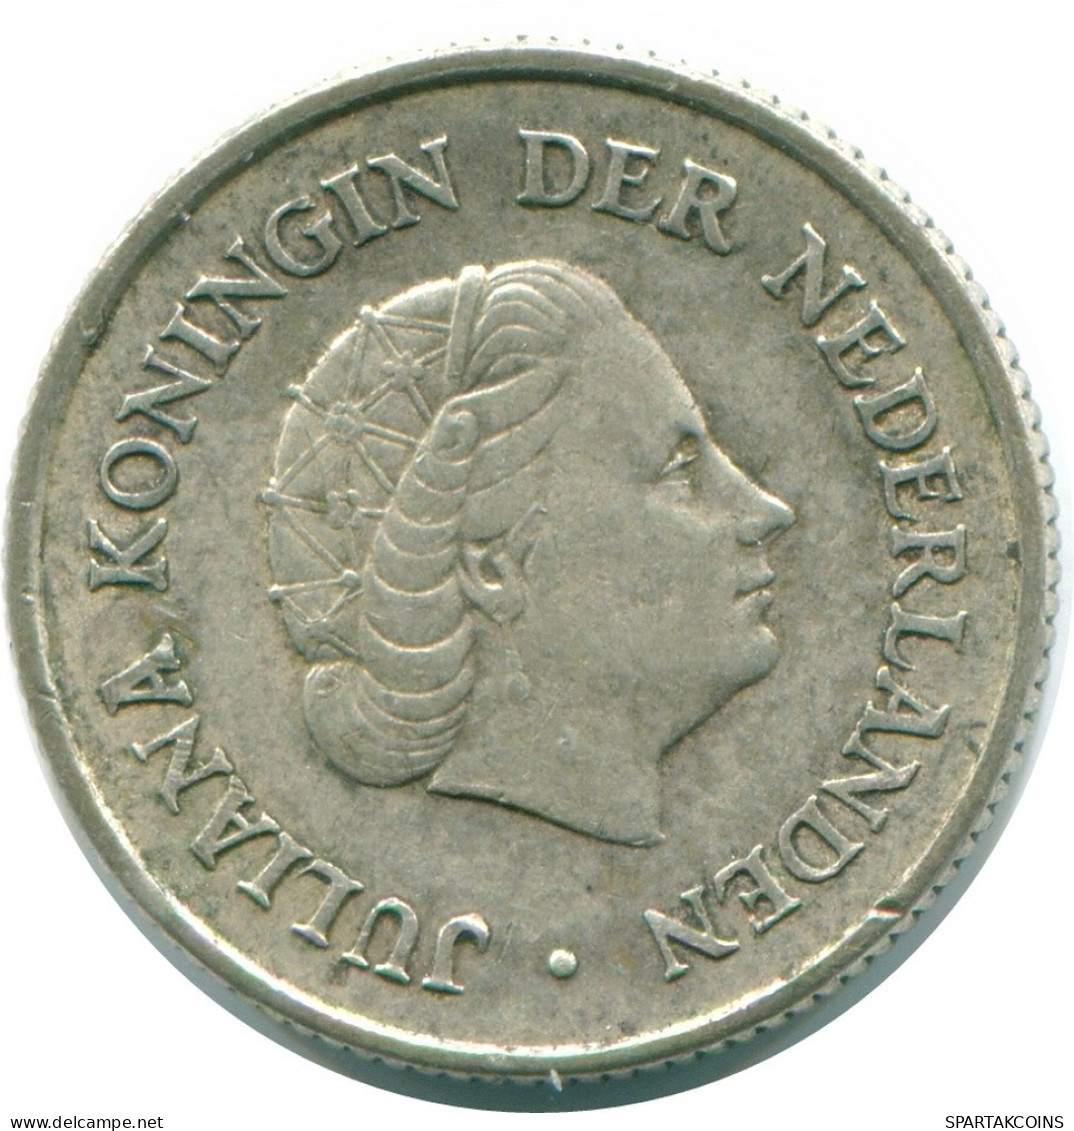 1/4 GULDEN 1965 NIEDERLÄNDISCHE ANTILLEN SILBER Koloniale Münze #NL11326.4.D.A - Antilles Néerlandaises